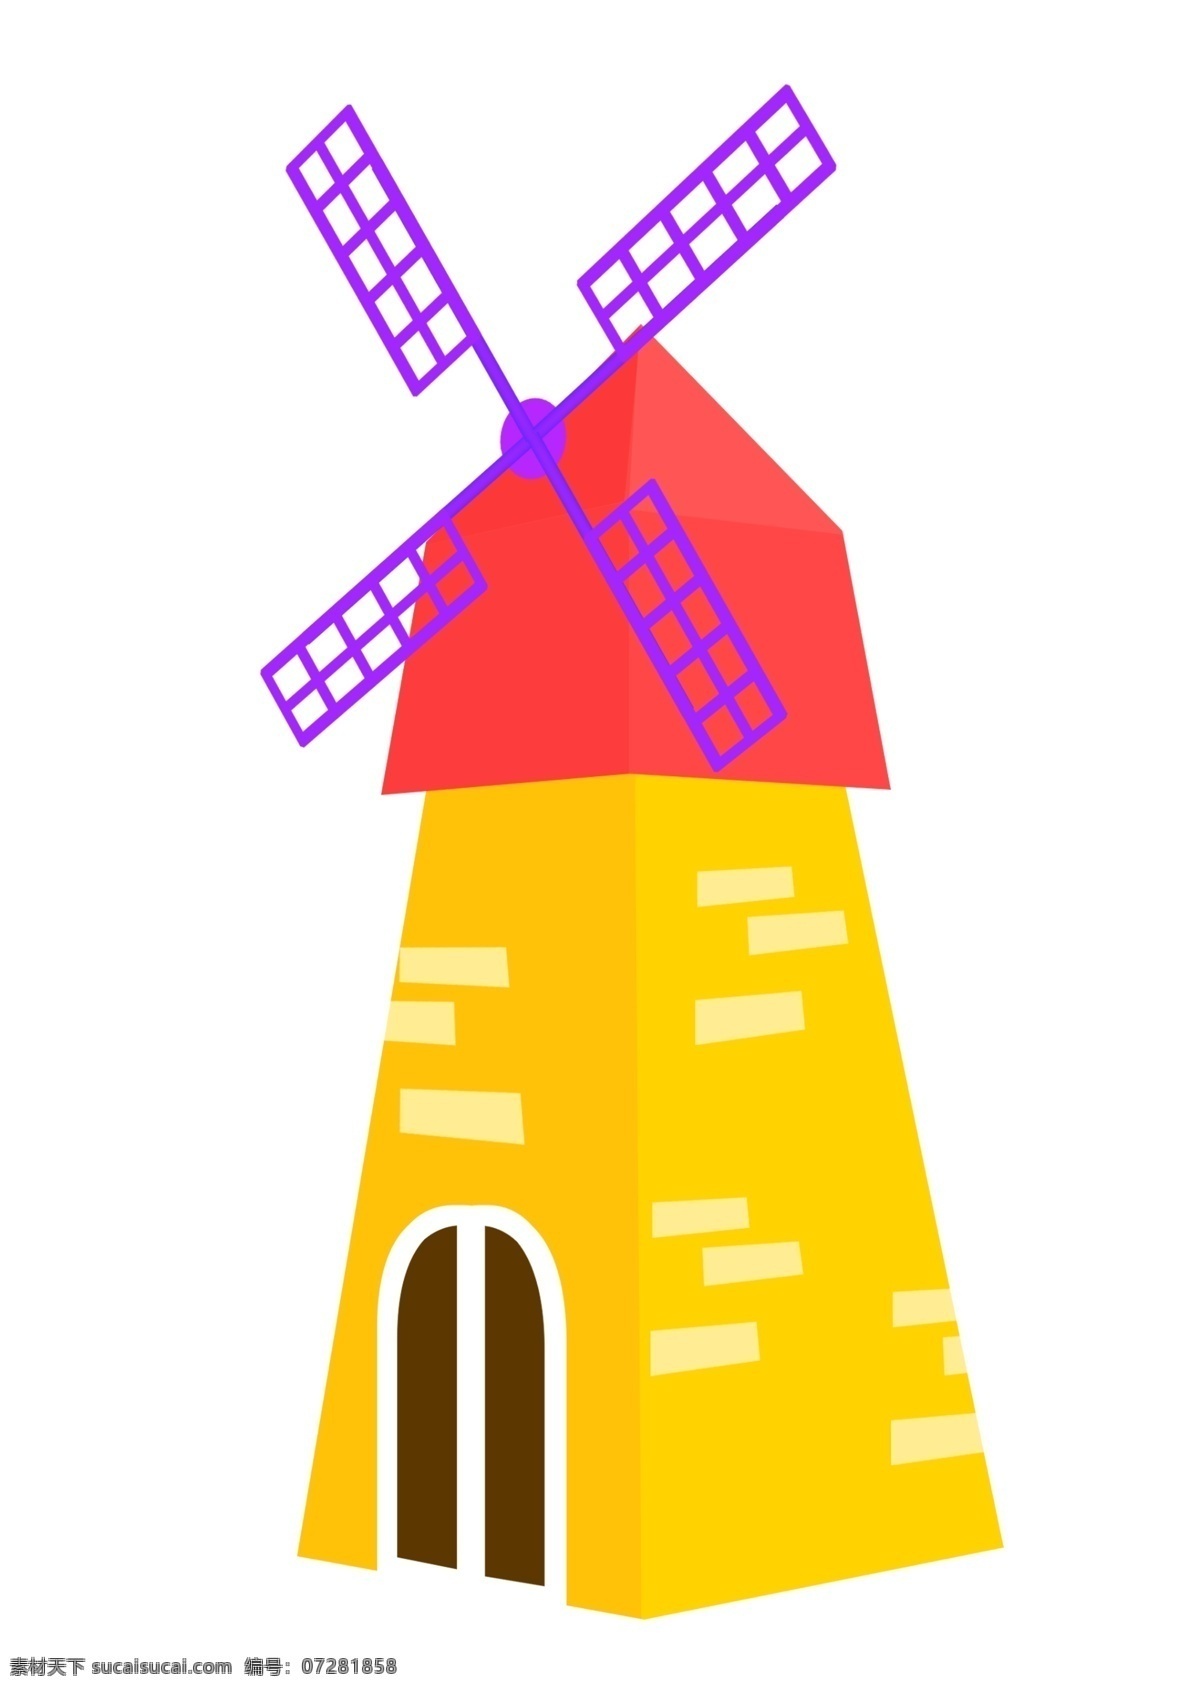 木头 风车 装饰 插画 黄紫的风车 风车建筑 创意风车 立体风车 卡通风车 精美风车 木质的风车